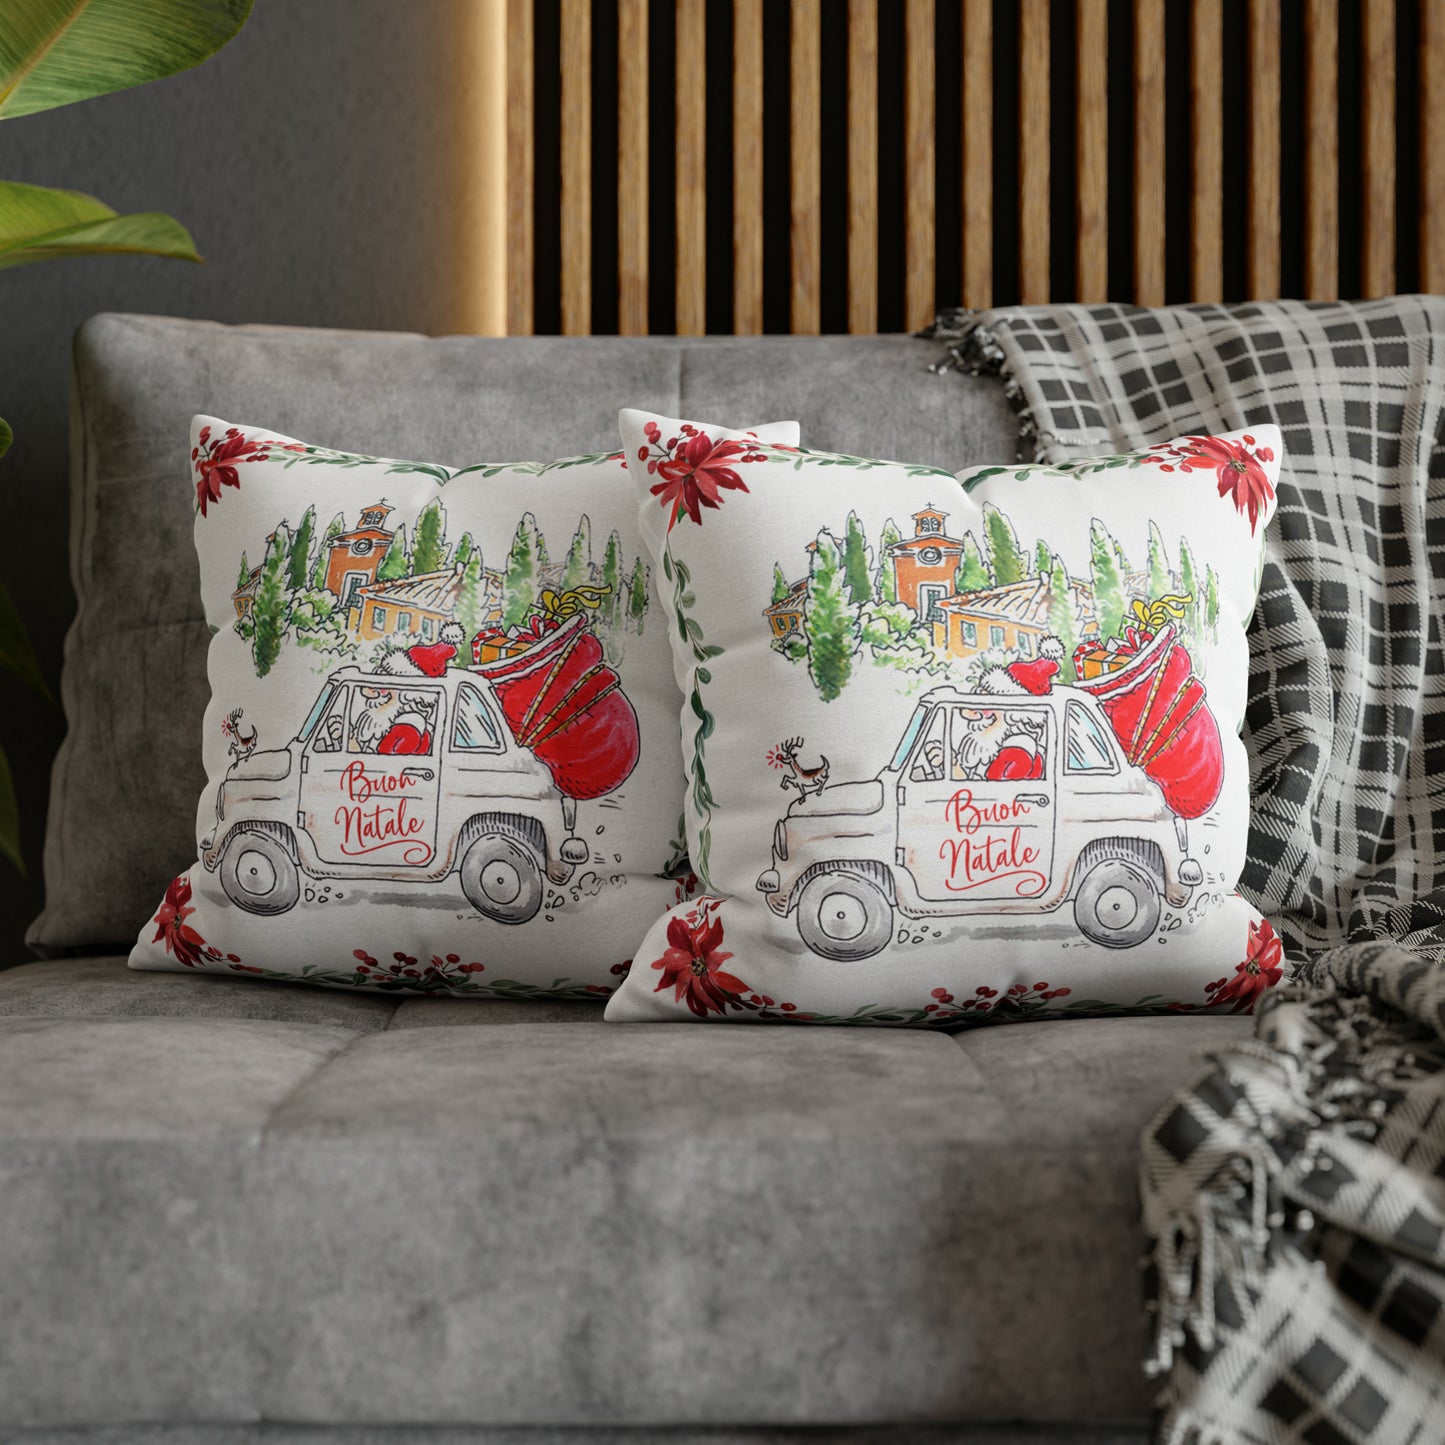 Babbo Natale pillow case/cover | Buon Natale, Fiat 500, Italy Christmas gift, Italy gift, Italy theme, Italy, Italia, Italian Christmas